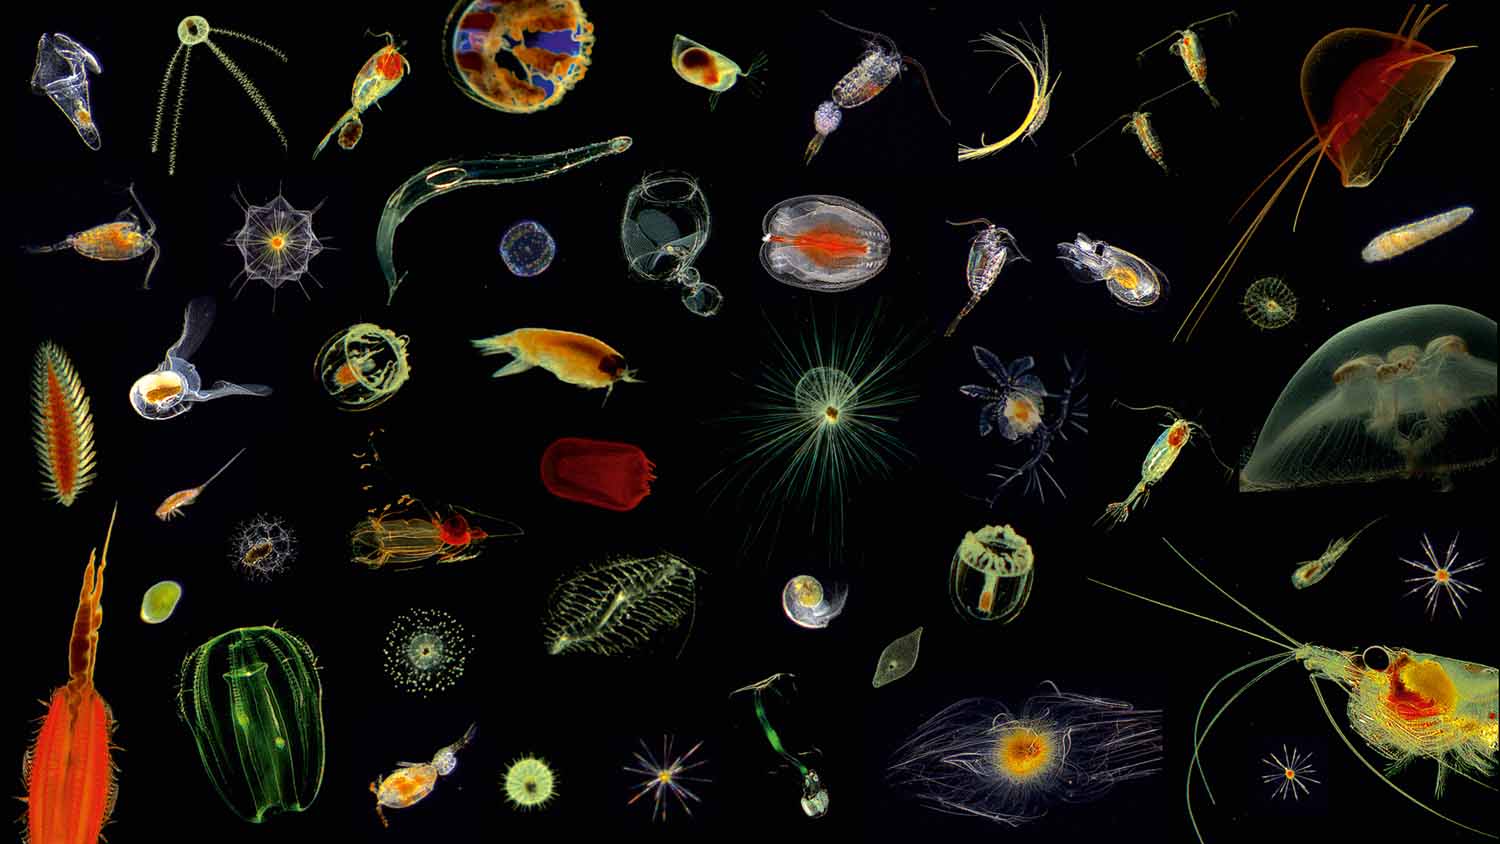 Microcosmos of the Ocean